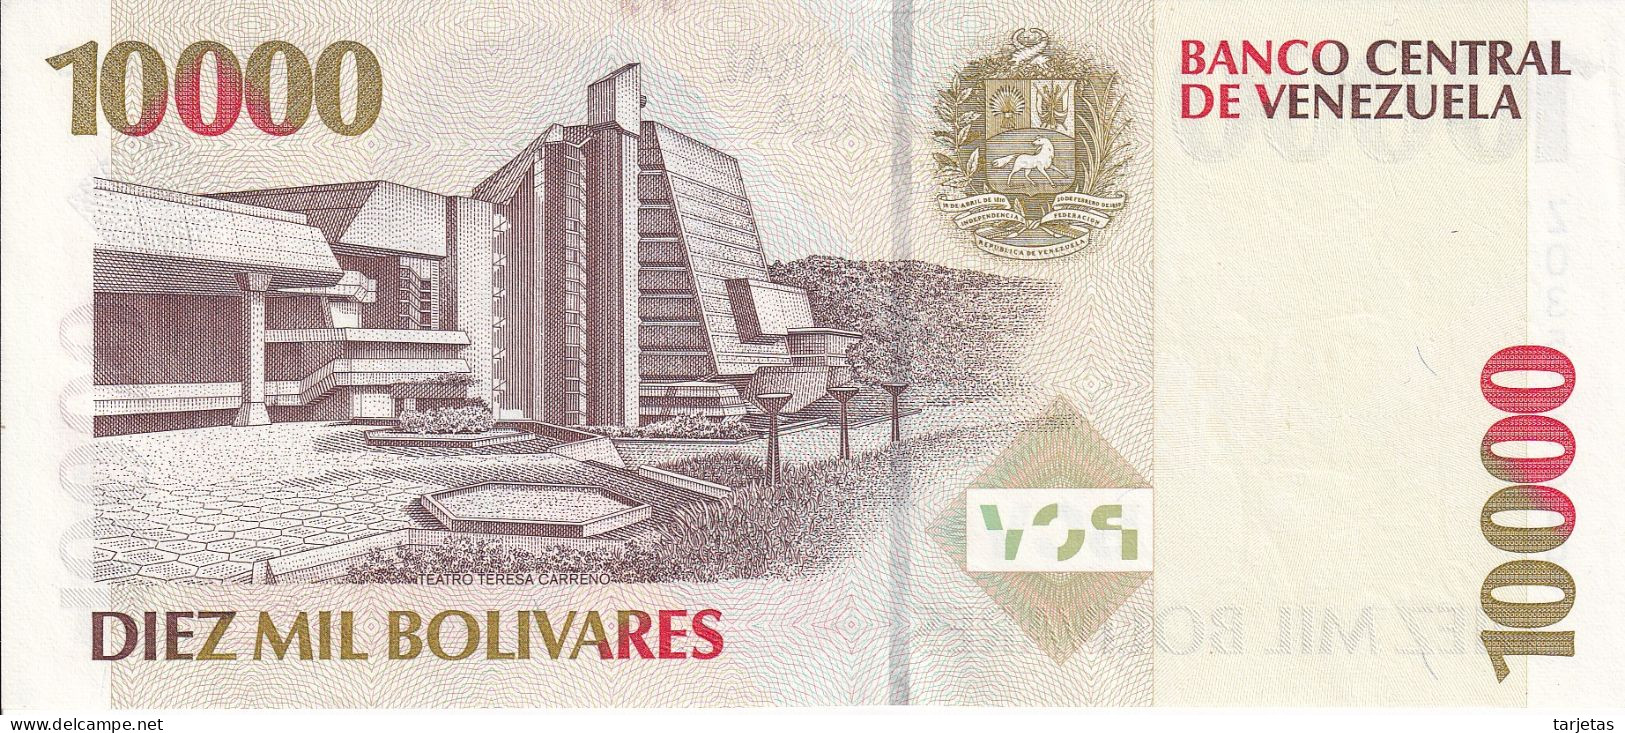 REPLACEMENT - BILLETE DE VENEZUELA DE 10000 BOLIVARES DEL AÑO 1998 SIN CIRCULAR (UNC) REEMPLAZO (BANKNOTE) - Venezuela